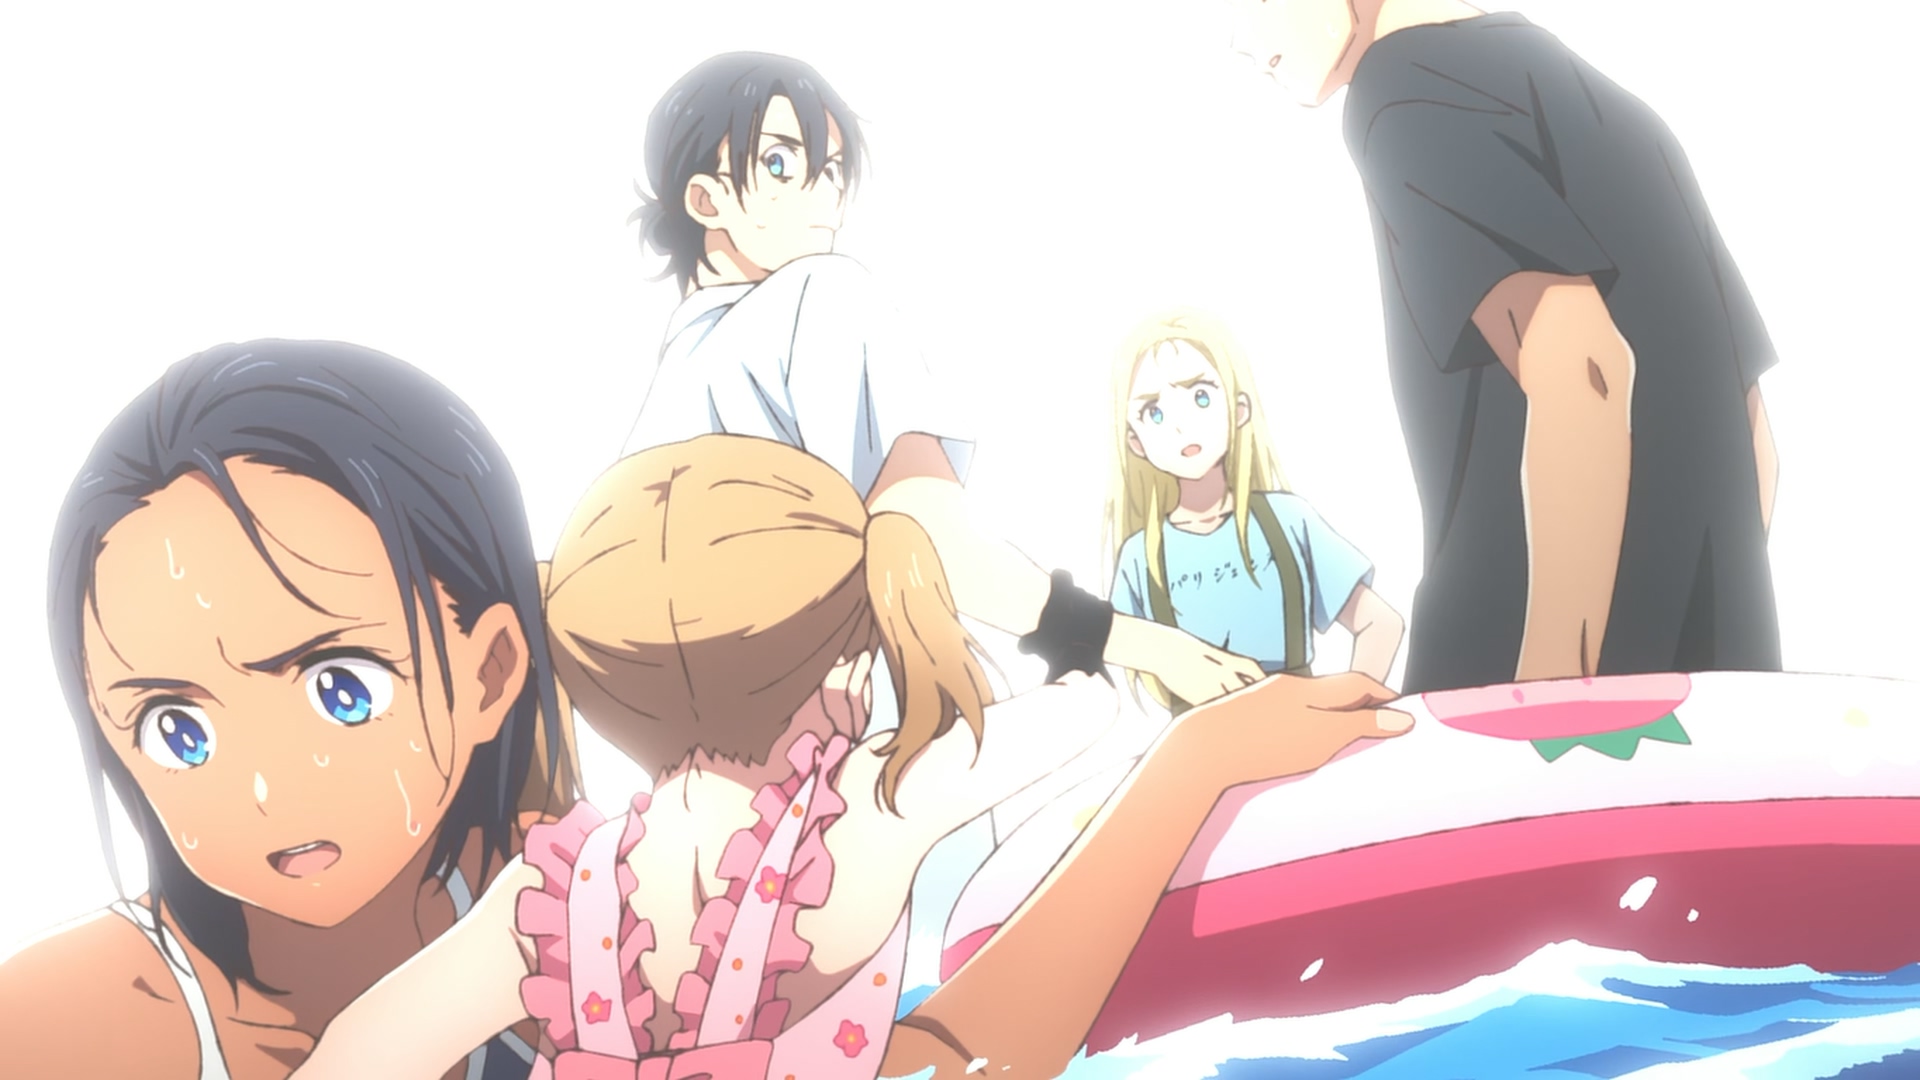 Assistir Summer Time Rendering Episódio 6 Online - Animes BR